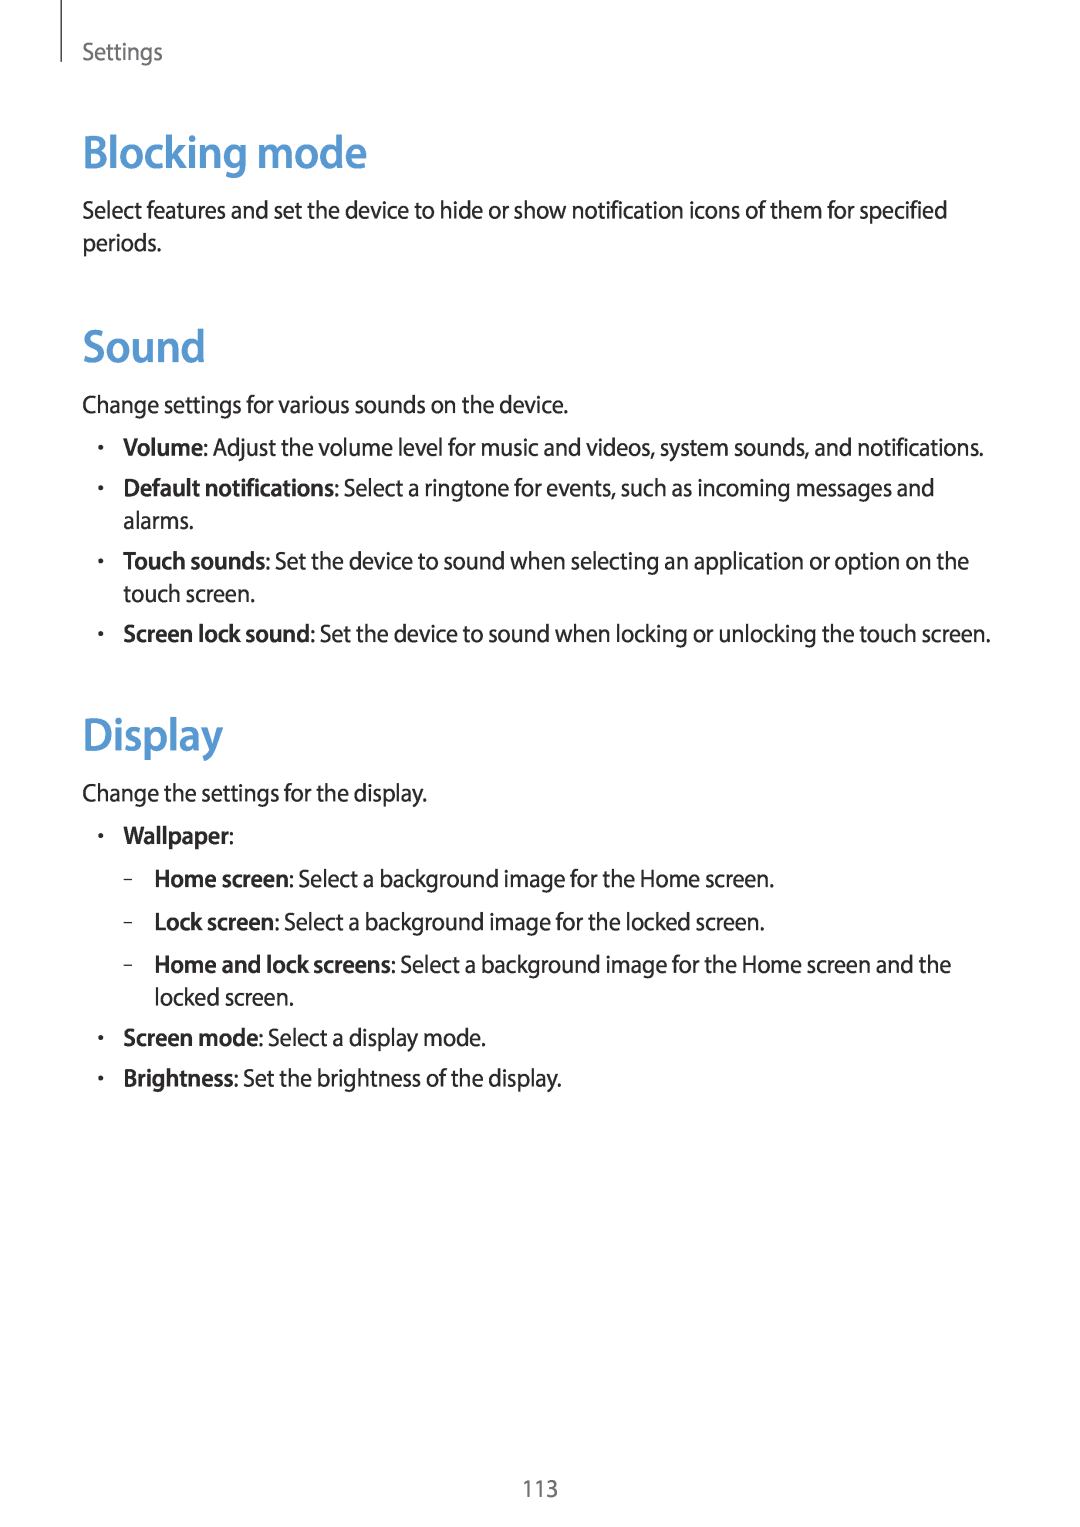 Samsung EK-GC100 user manual Blocking mode, Sound, Display, Wallpaper, Settings 